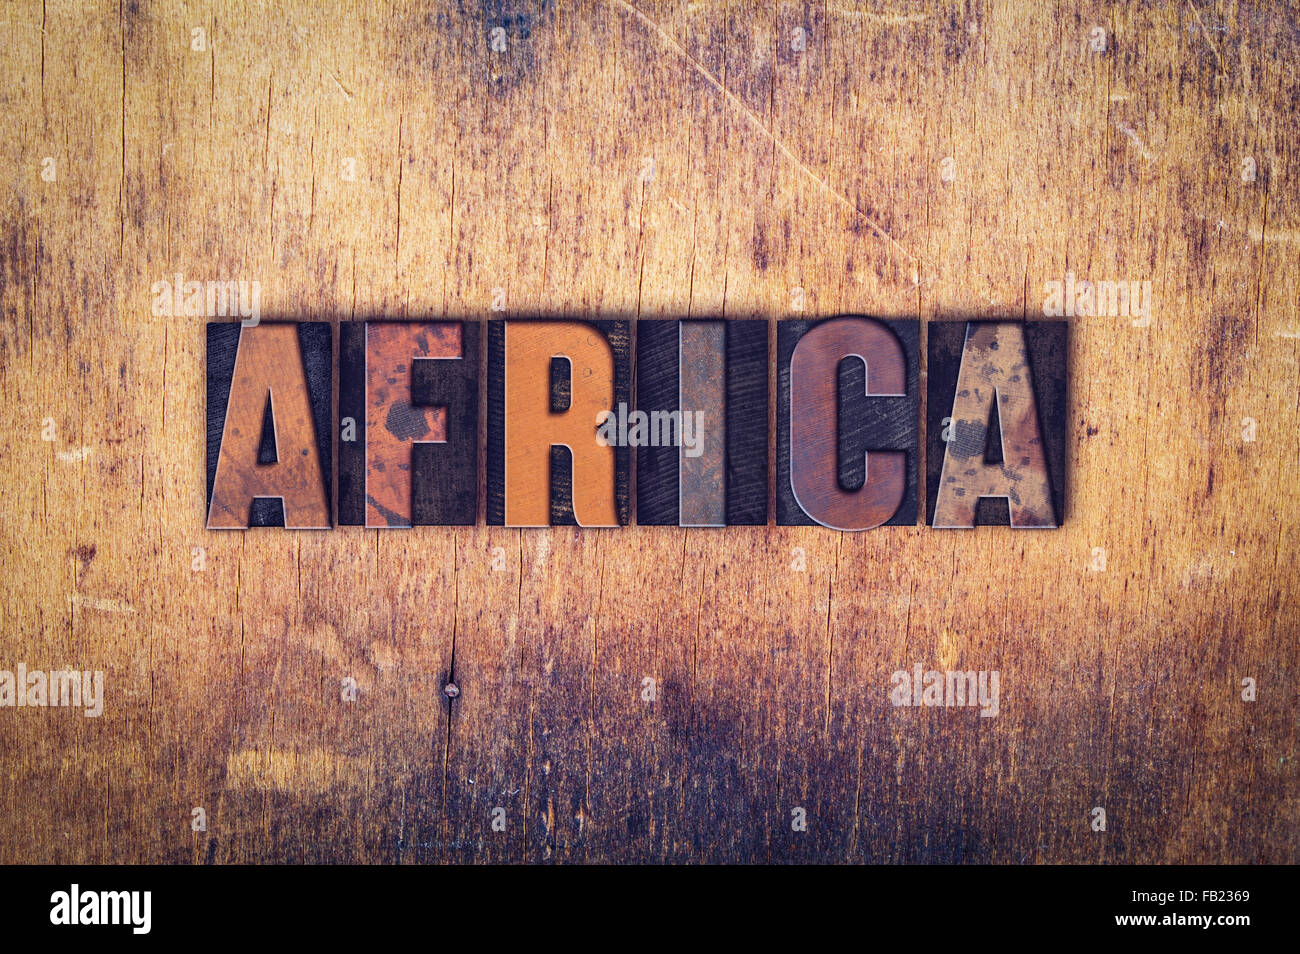 Le mot 'Afrique' écrit en typographie vintage sale type sur un fond de bois vieilli. Banque D'Images